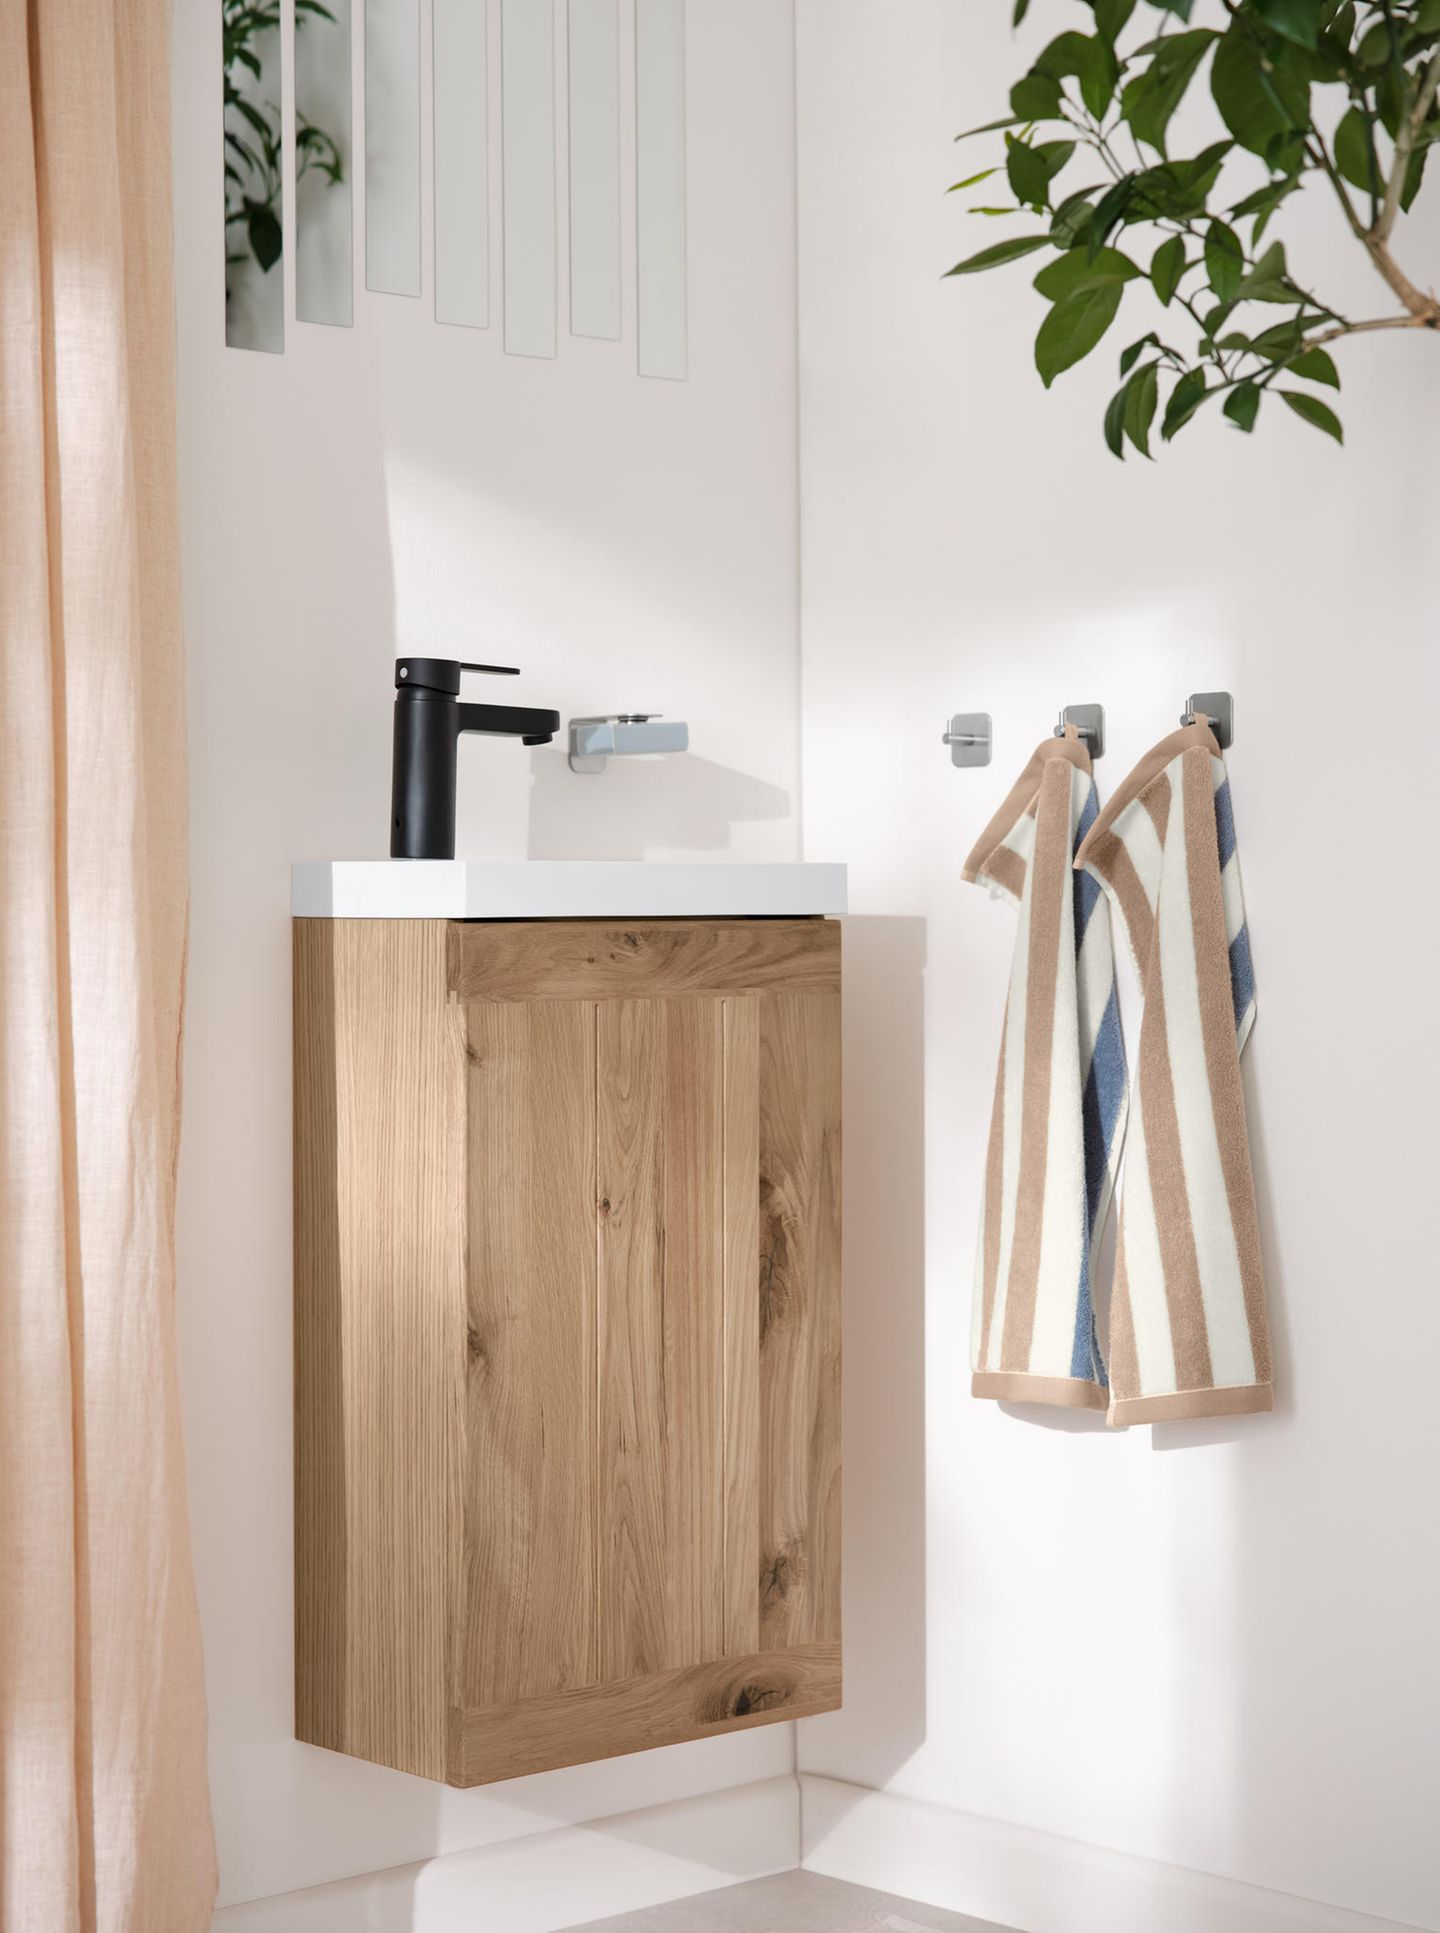 Waschbeckenunterschrank aus Holz und braun-gestreifte Handtücher in einem Gäste-WC